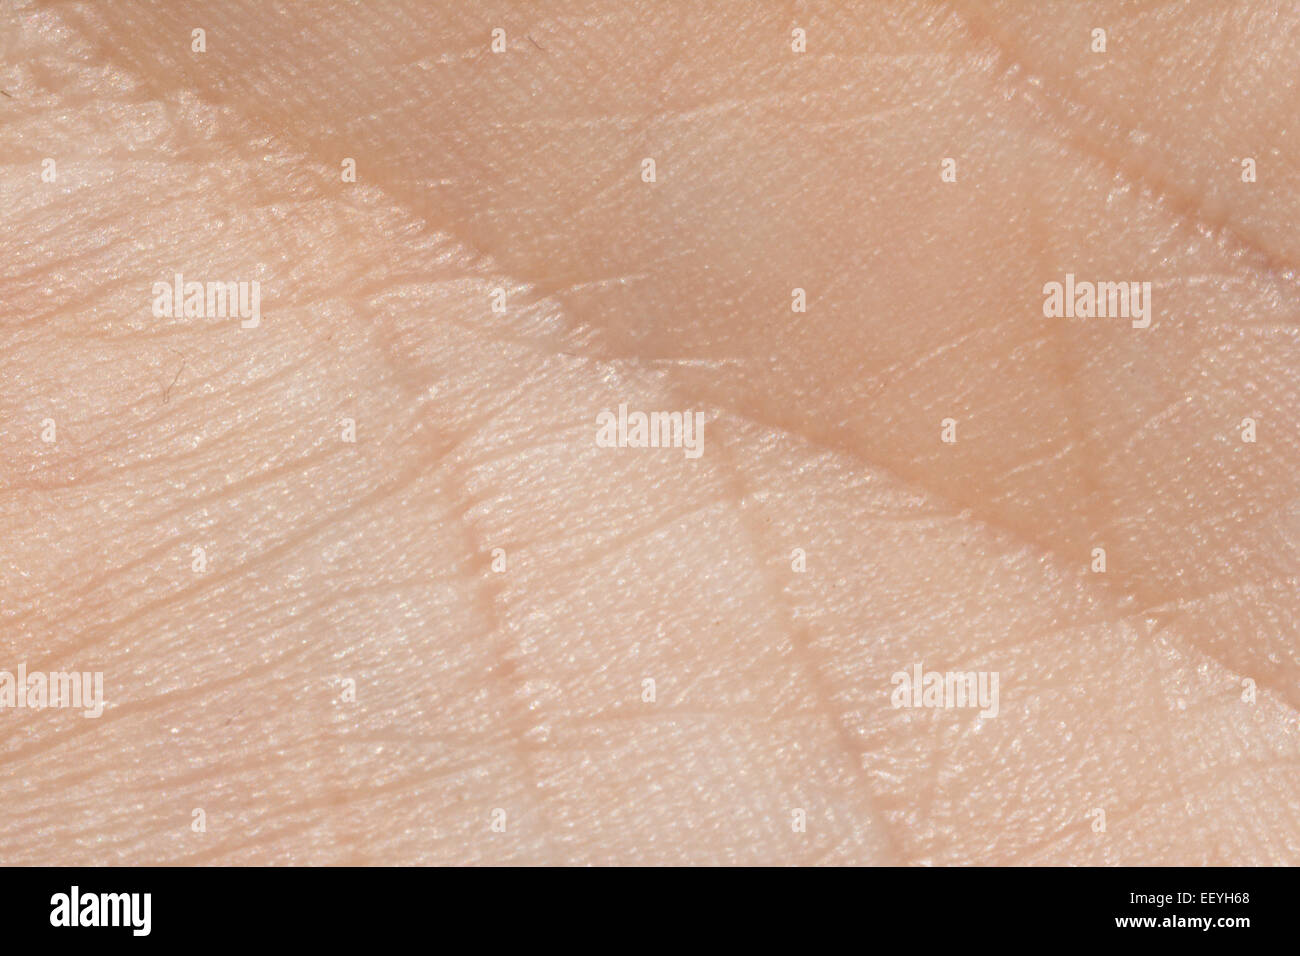 La texture de la peau humaine closeup détail Banque D'Images